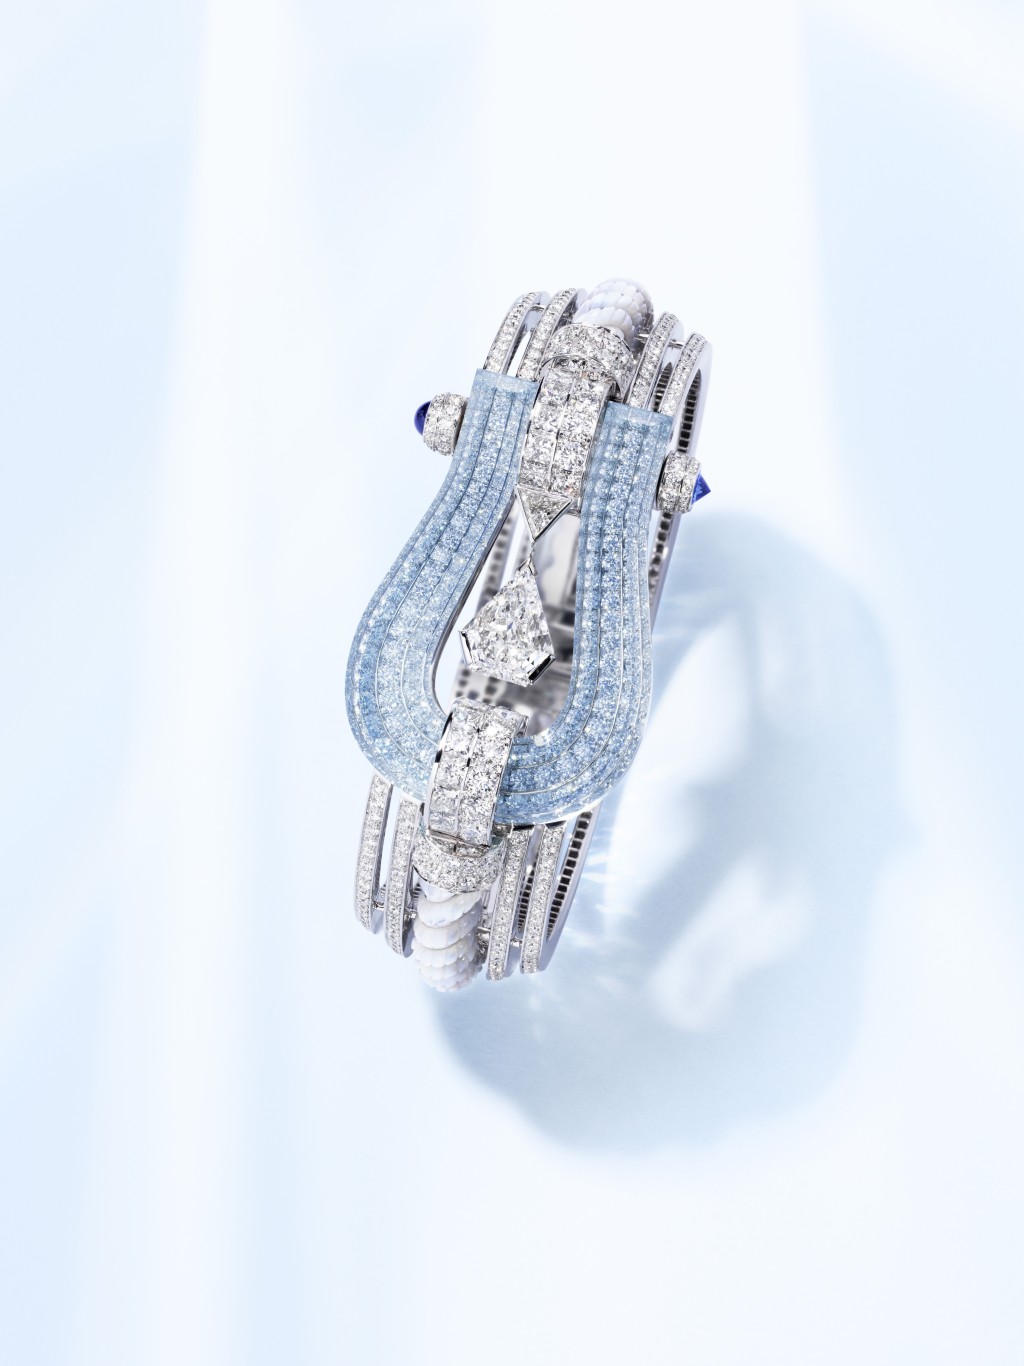 以品牌代表性的Force 10手链为灵感的Force 10 Winning Spirit系列，运用钻石、海蓝宝石和蓝宝石拼凑出海洋风格。